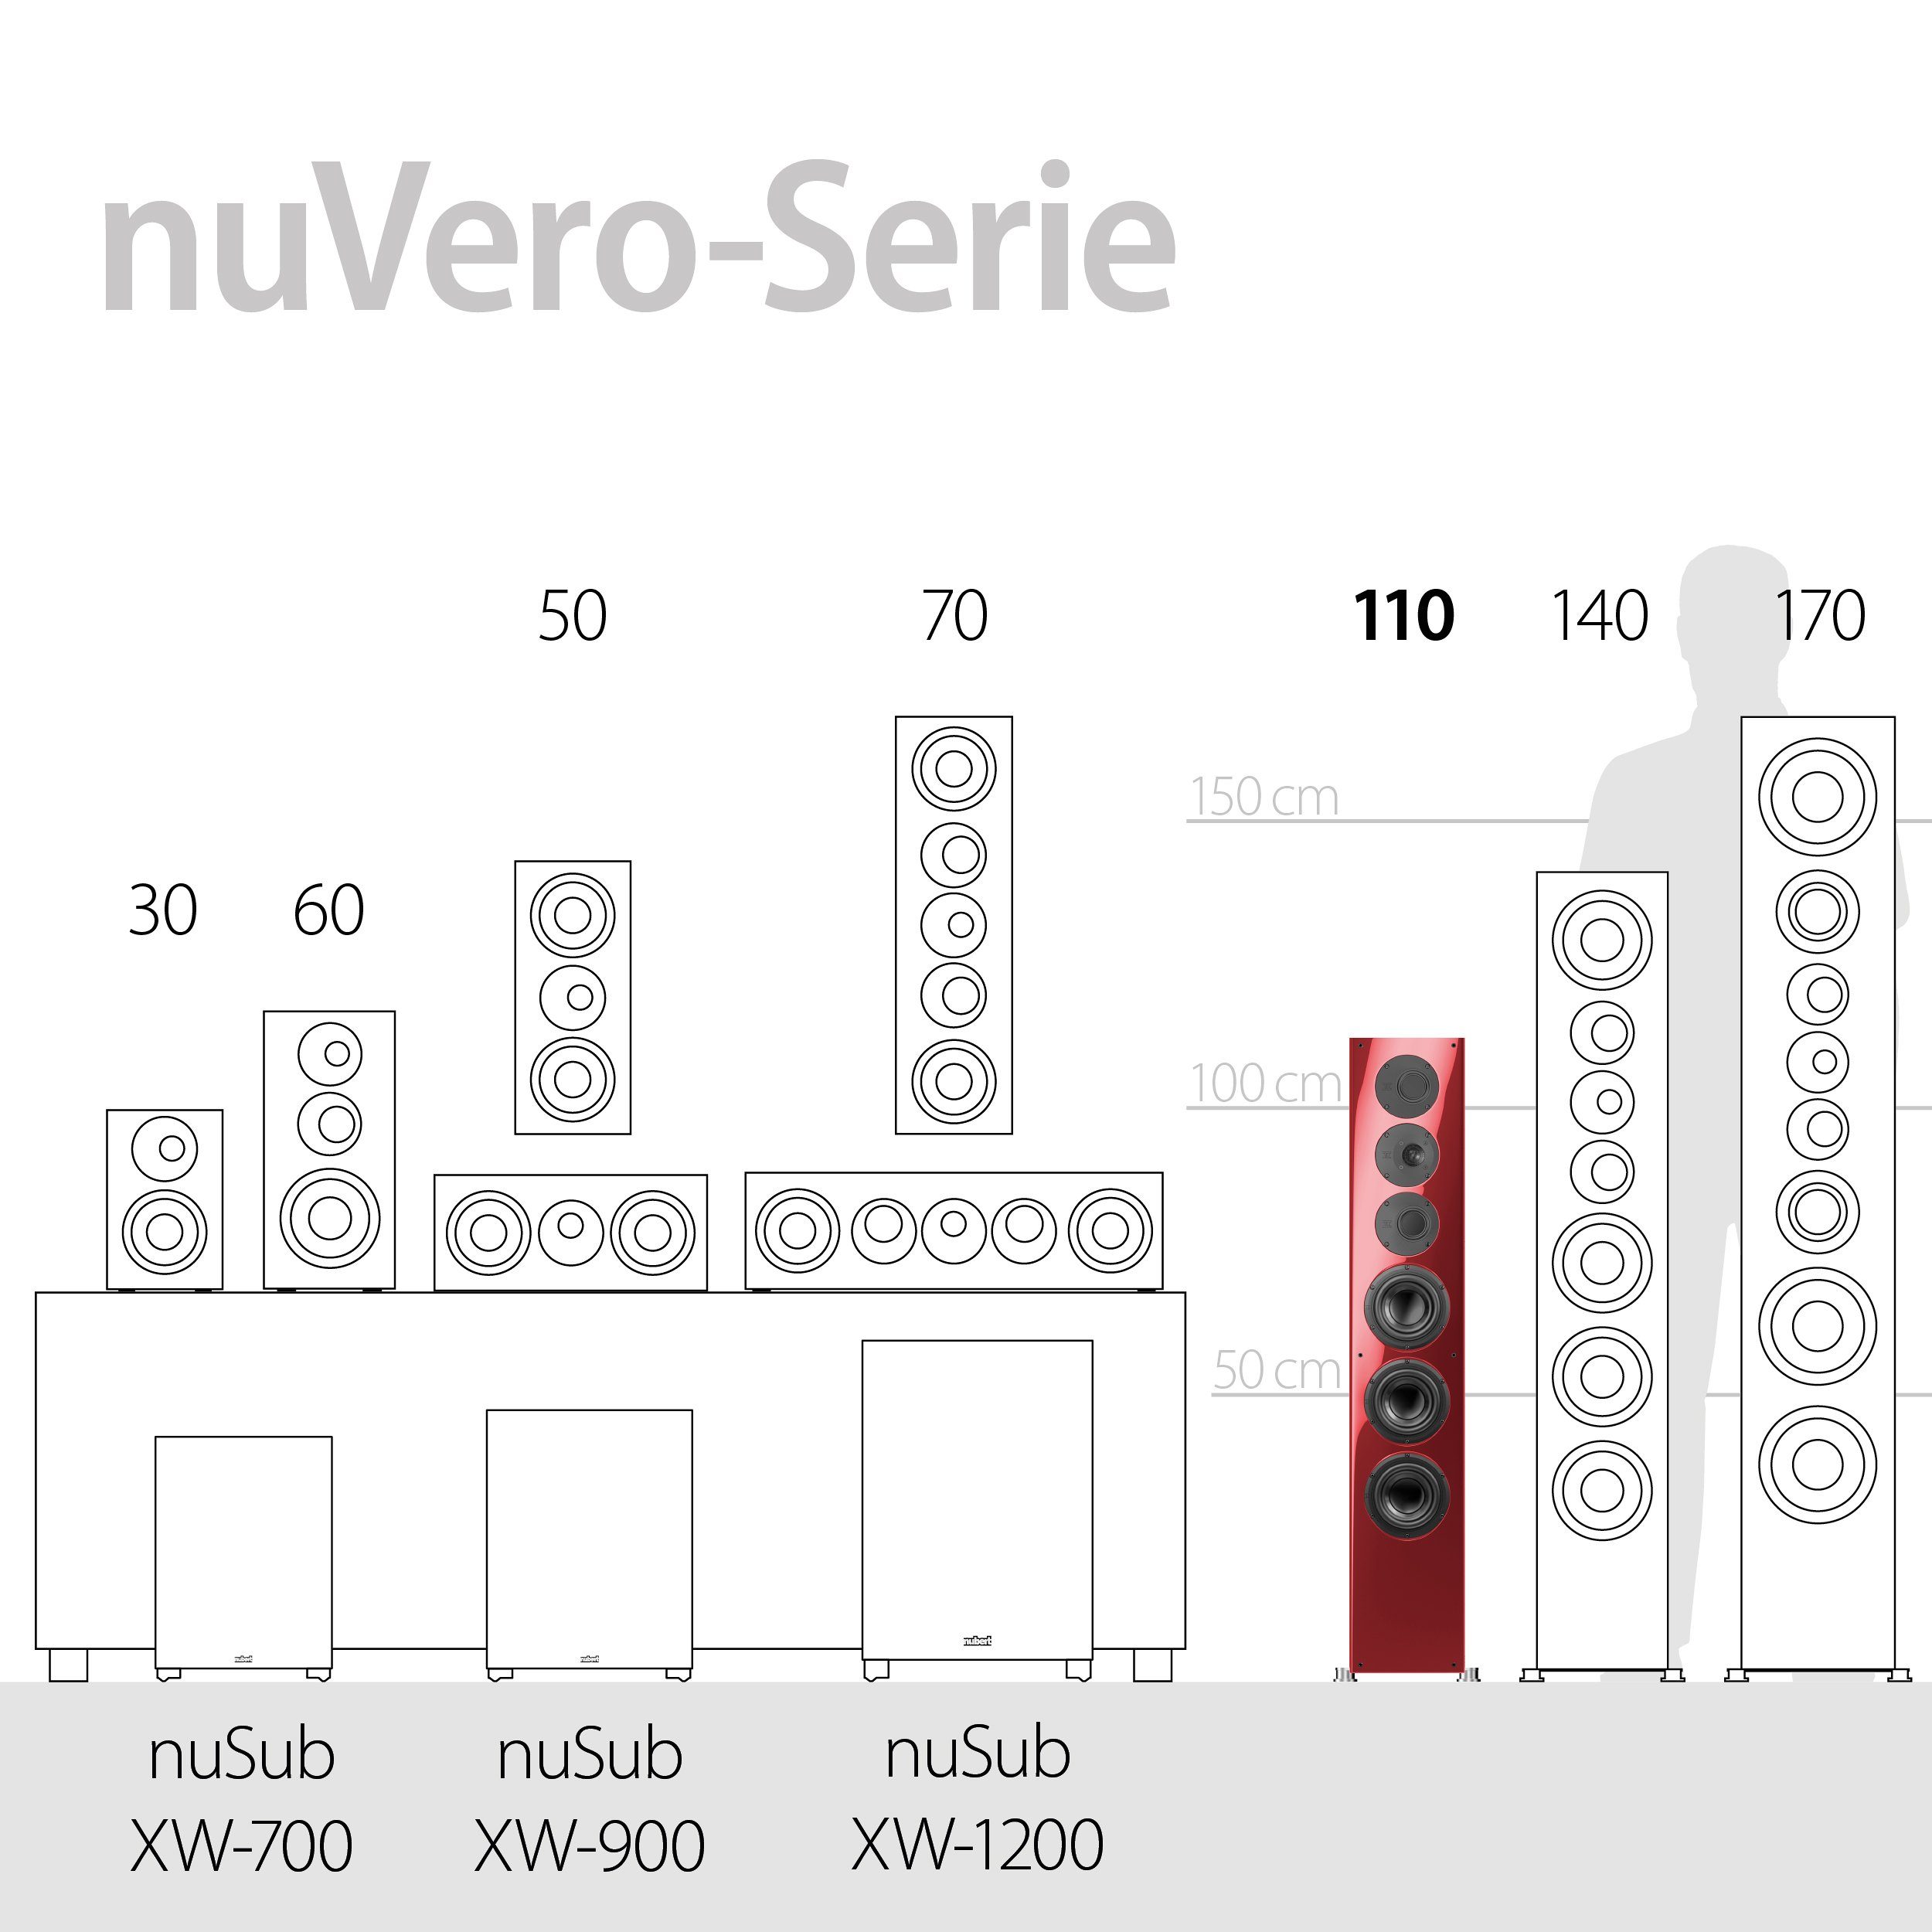 Rubinrot Stand-Lautsprecher (520 W) nuVero Nubert 110